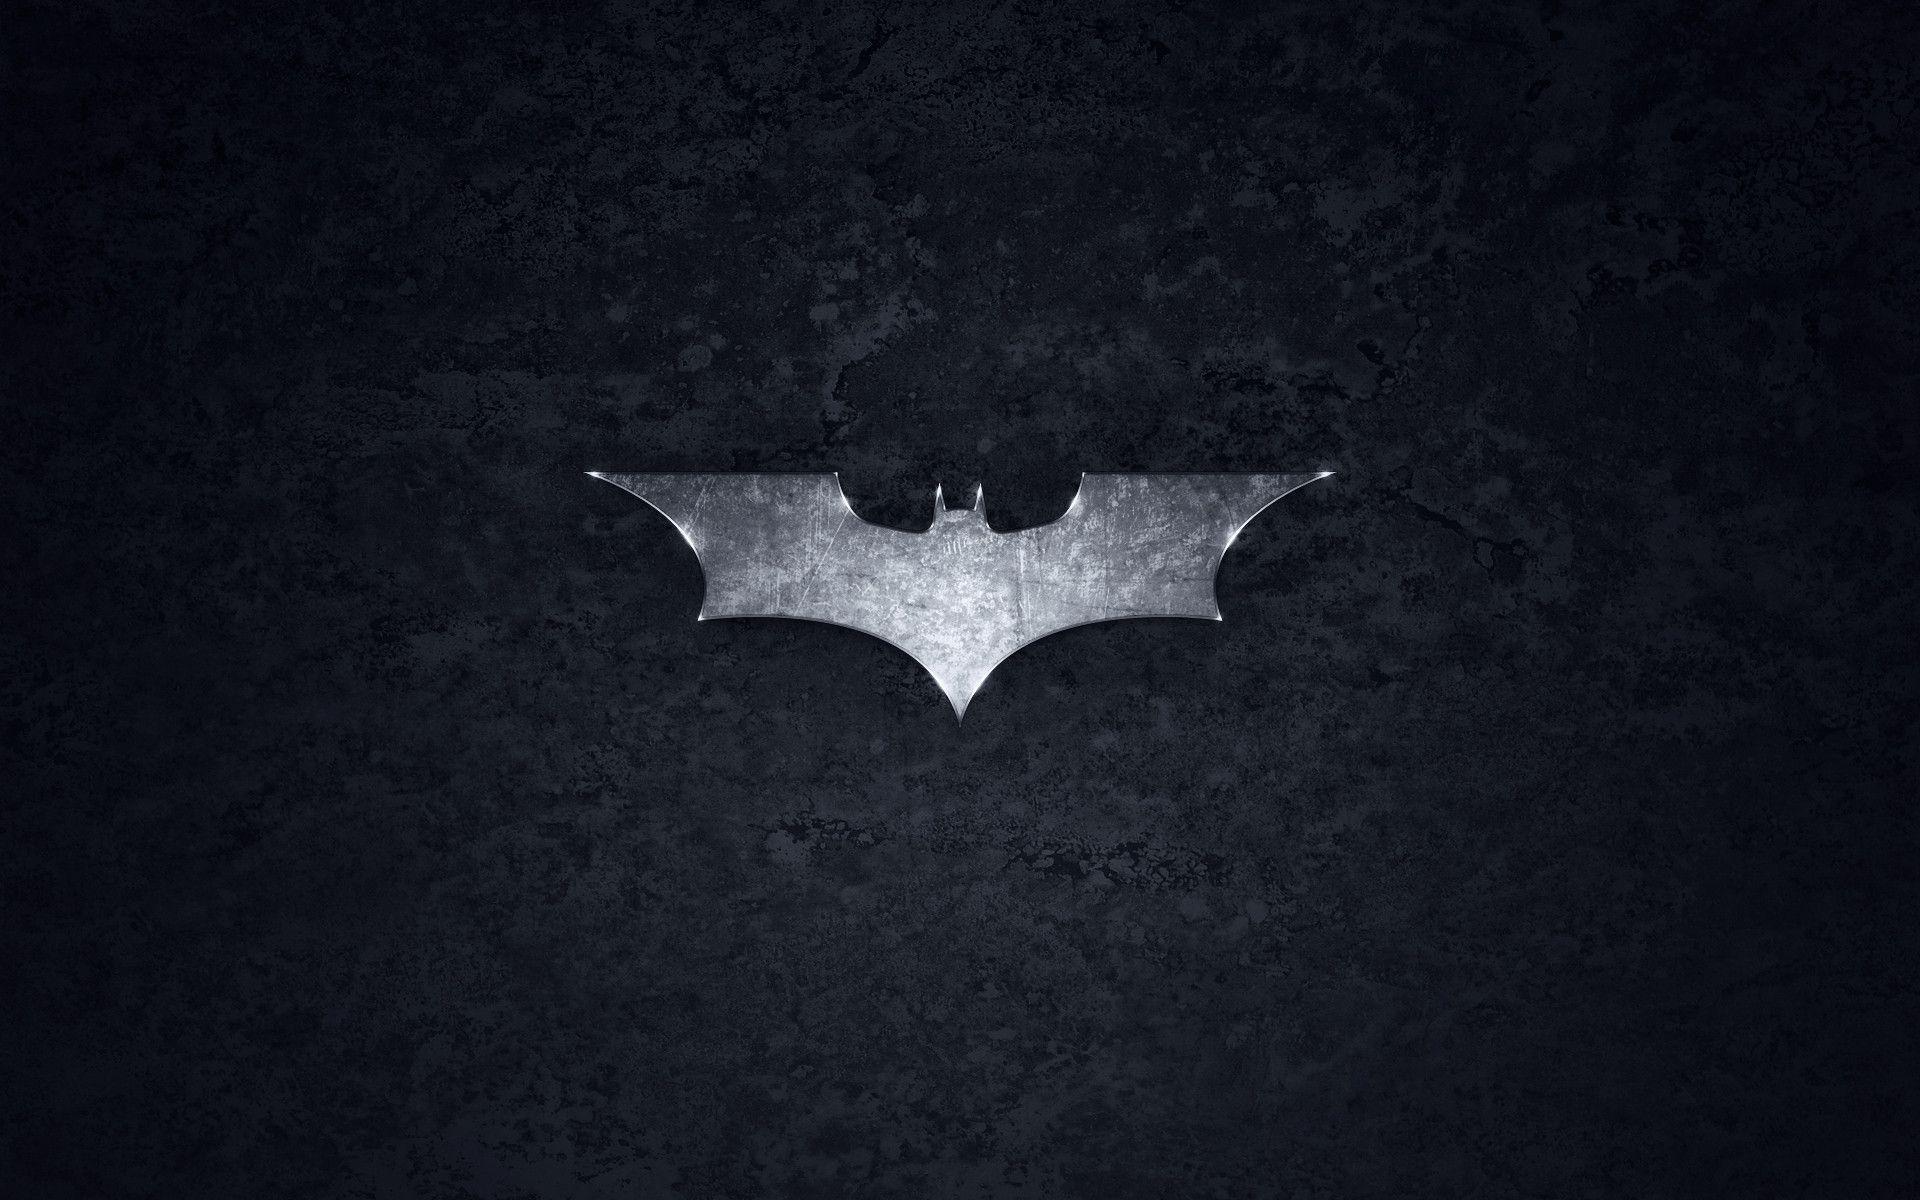 Batman wallpaper 67+, Download 4K HD Collections of Batman …